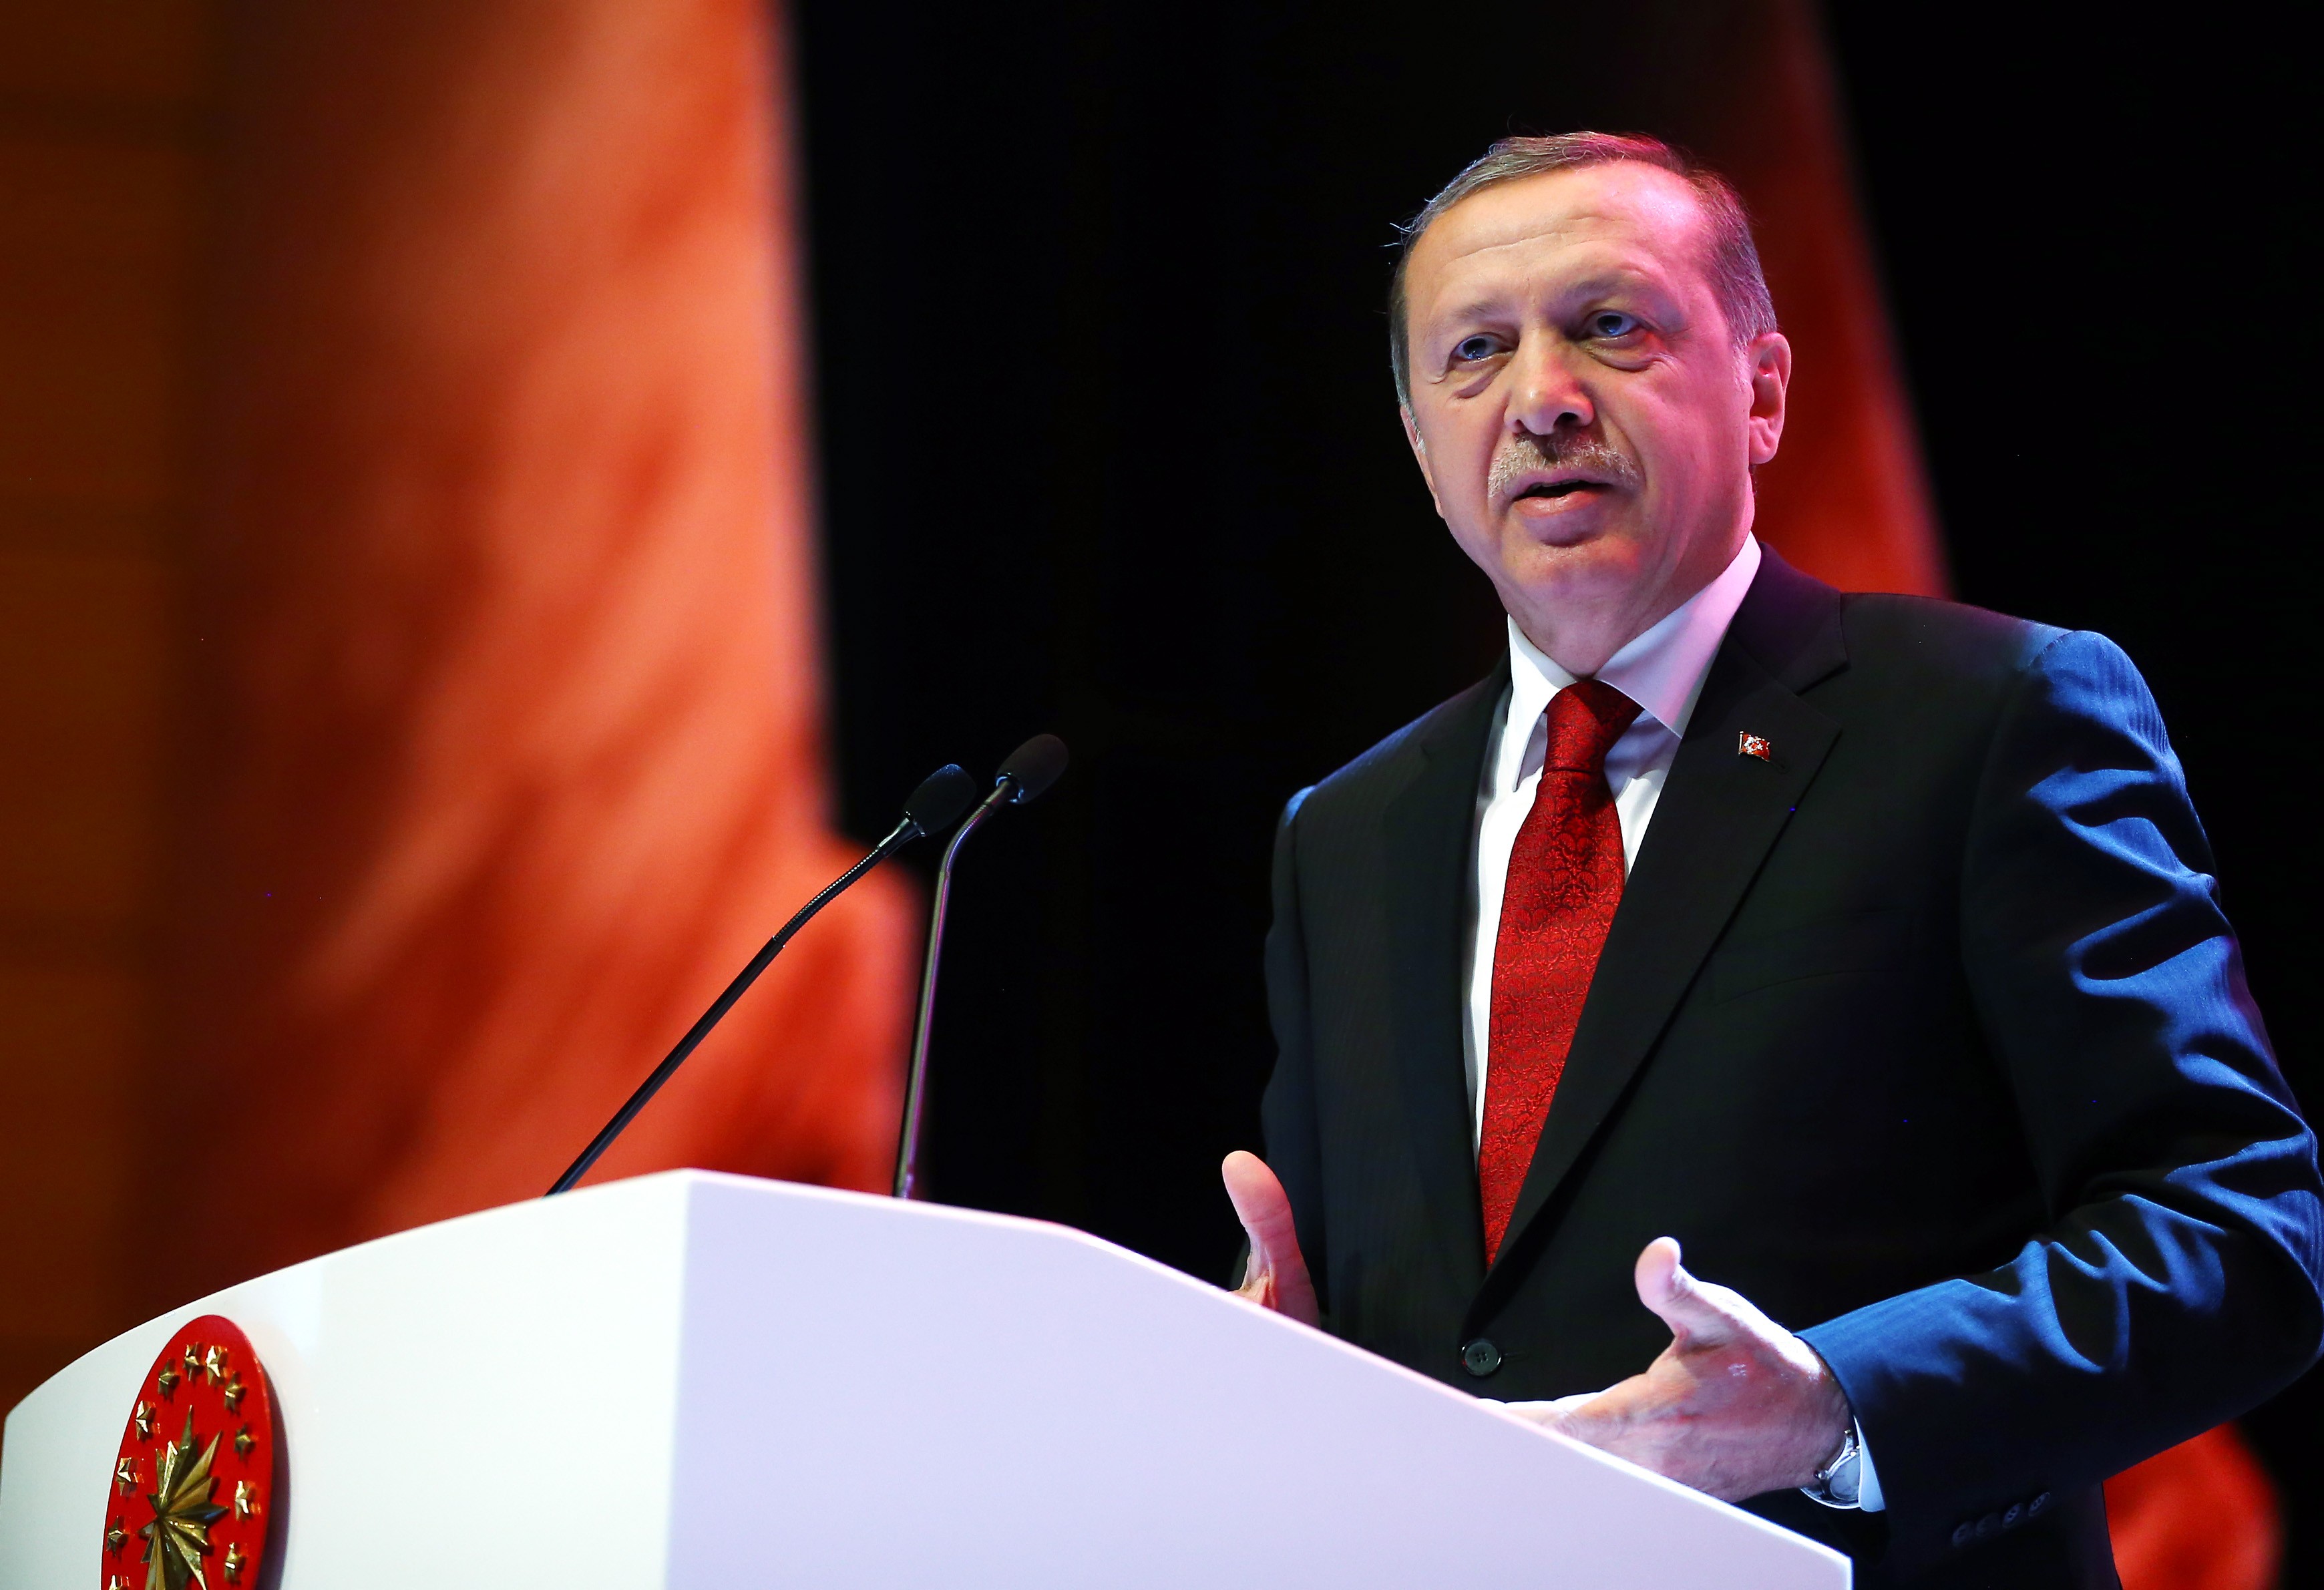 Türkiyə prezidenti: «Yəhudilərə qarşı olan linç kampaniyası indi müsəlmanlara edilir»